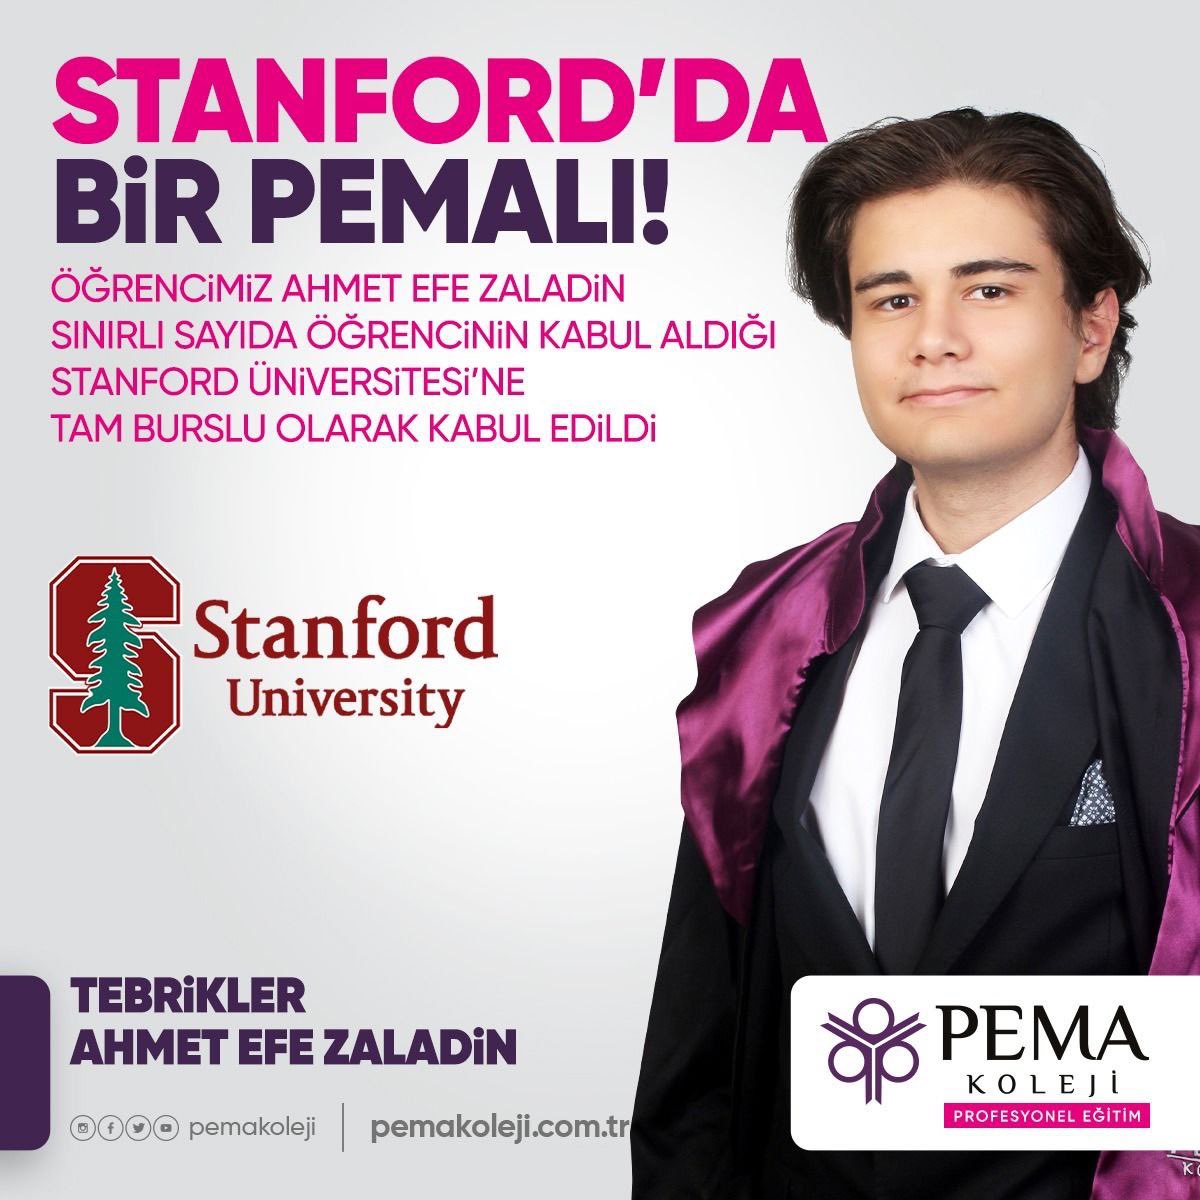 STANFORD'TA BİR PEMA'LI
PEMA Anadolu Lisesi öğrencimiz Ahmet Efe ZALADİN Türkiye'den az sayıda öğrencinin kabul aldığı ABD Stanford Üniversitesi'ne tam burslu olarak kabul edildi. Öğrencimize başarılar diliyoruz.

TEBRİKLER PEMA'LI

#BurasıPema #PemaKoleji #StanfordUnivecity